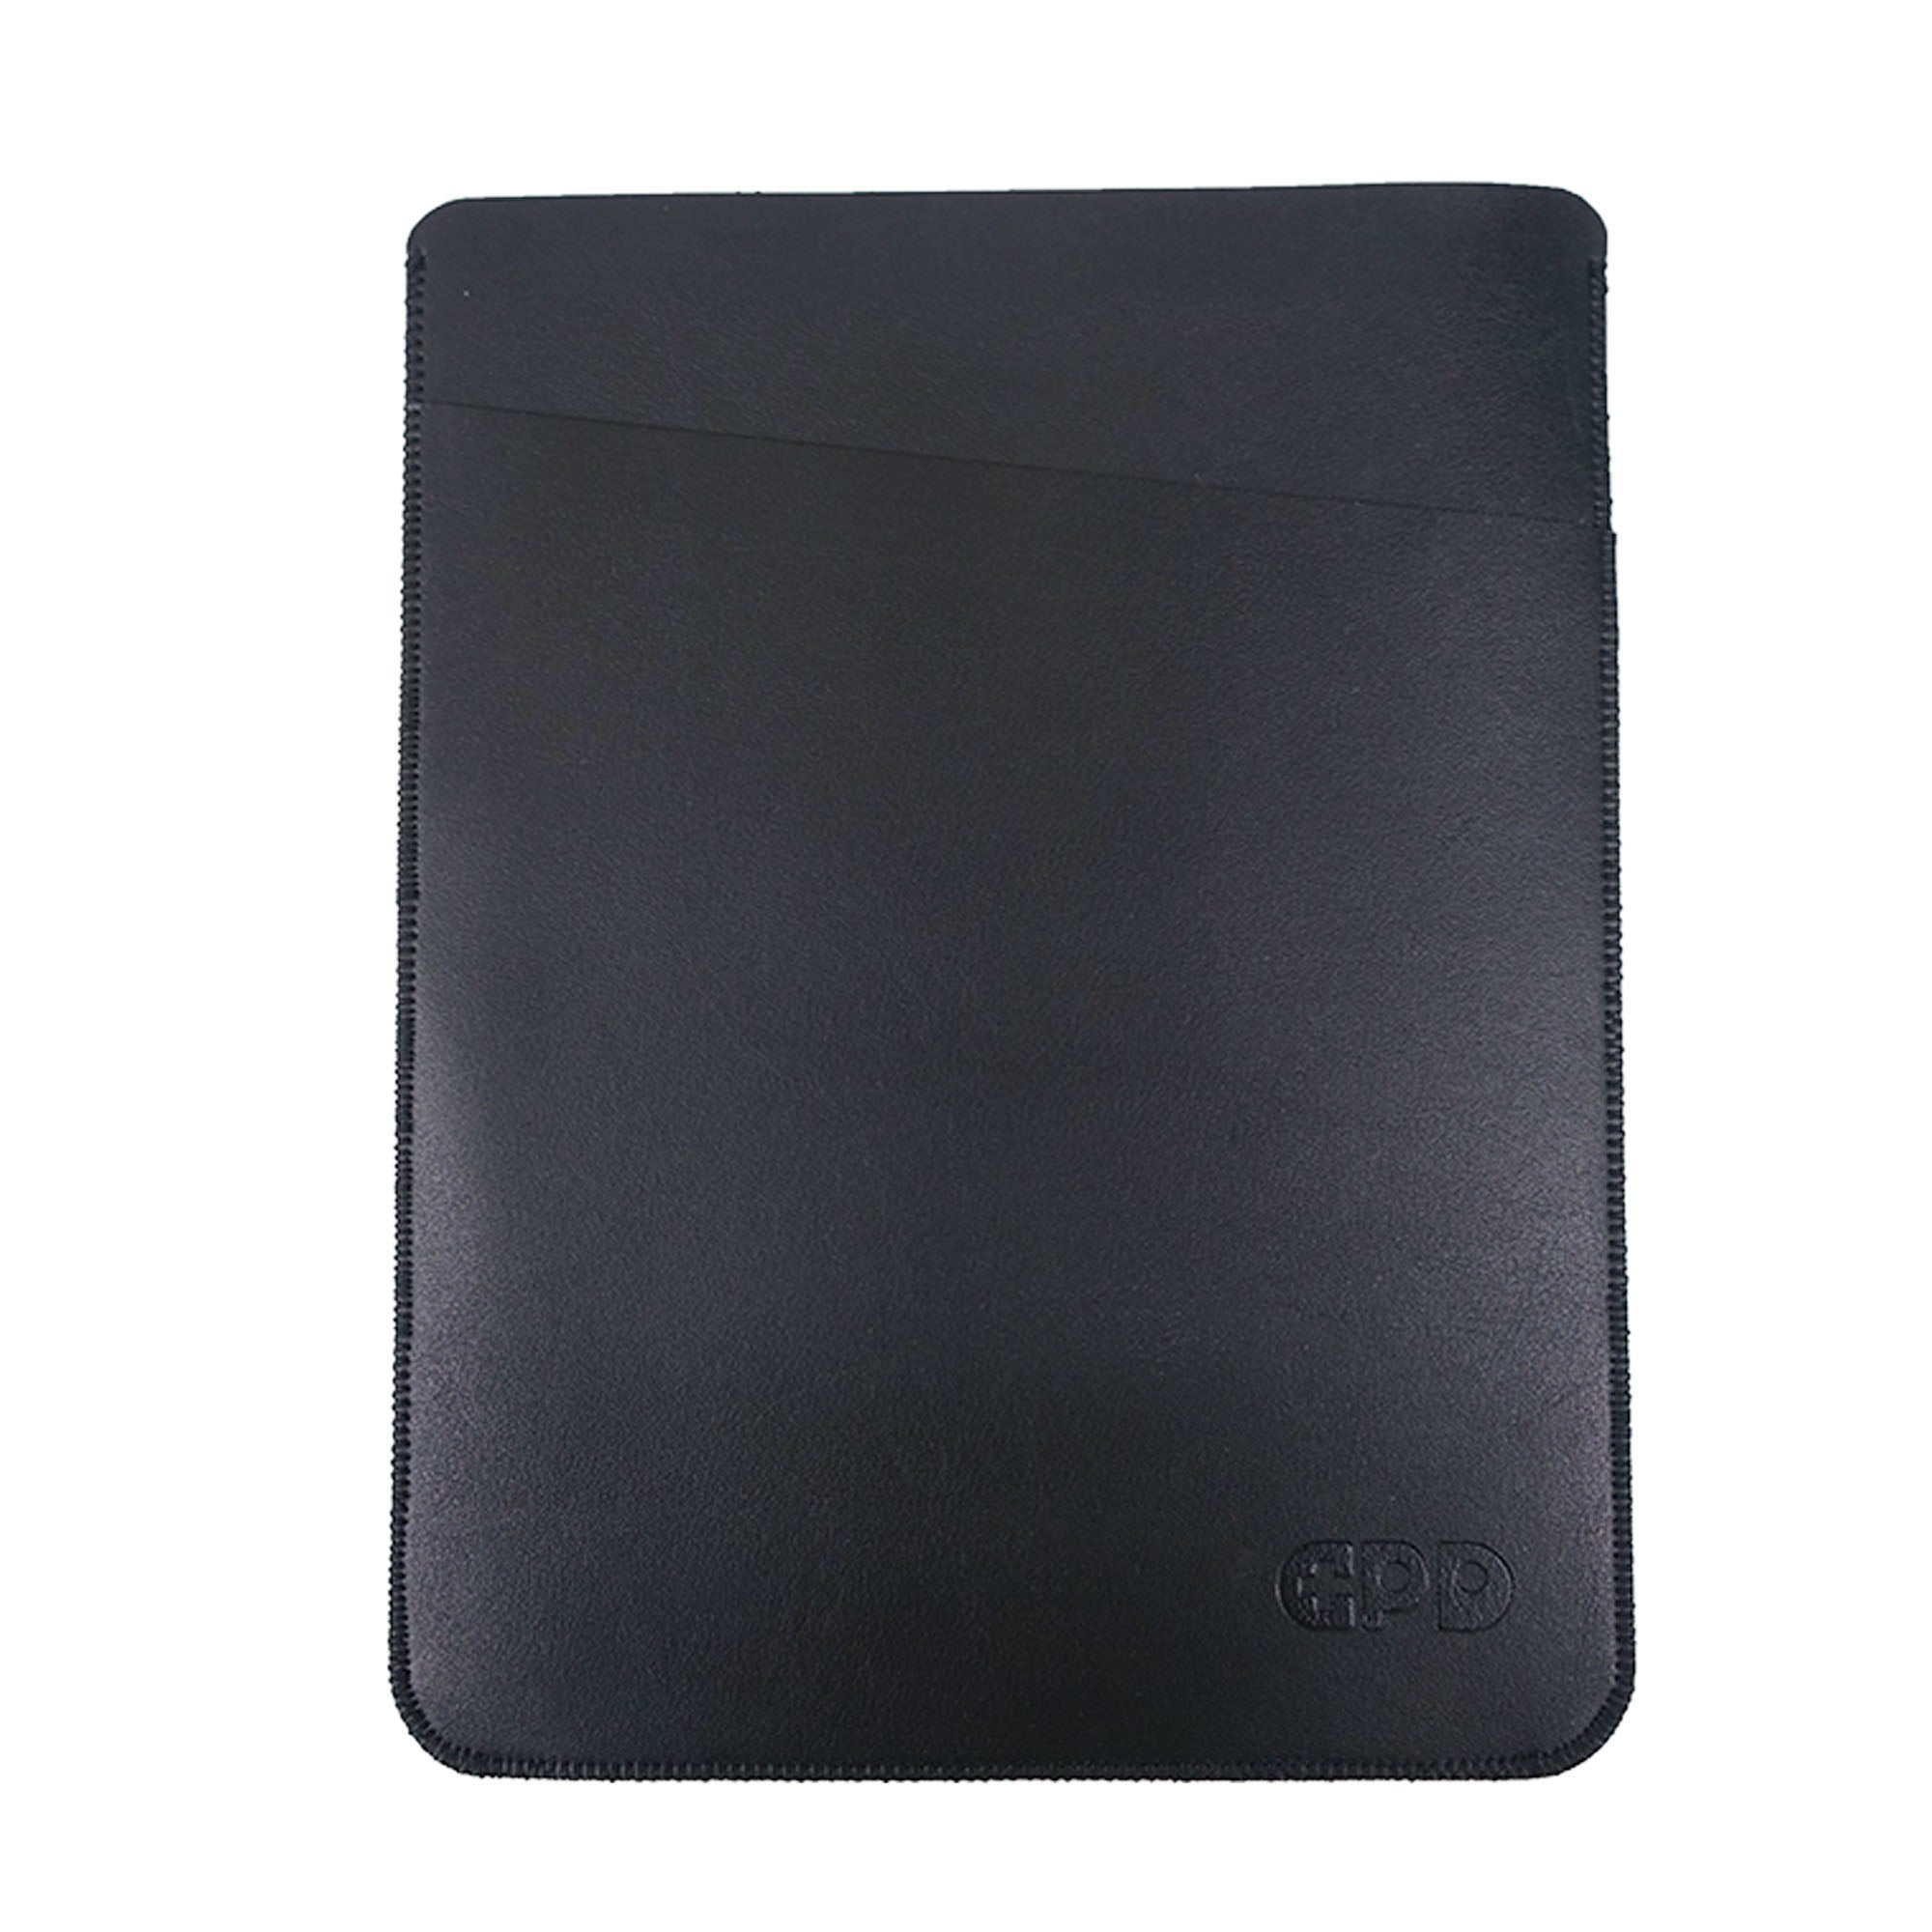 GPD P2 Max / GPD Pocket3 レザー調ケース